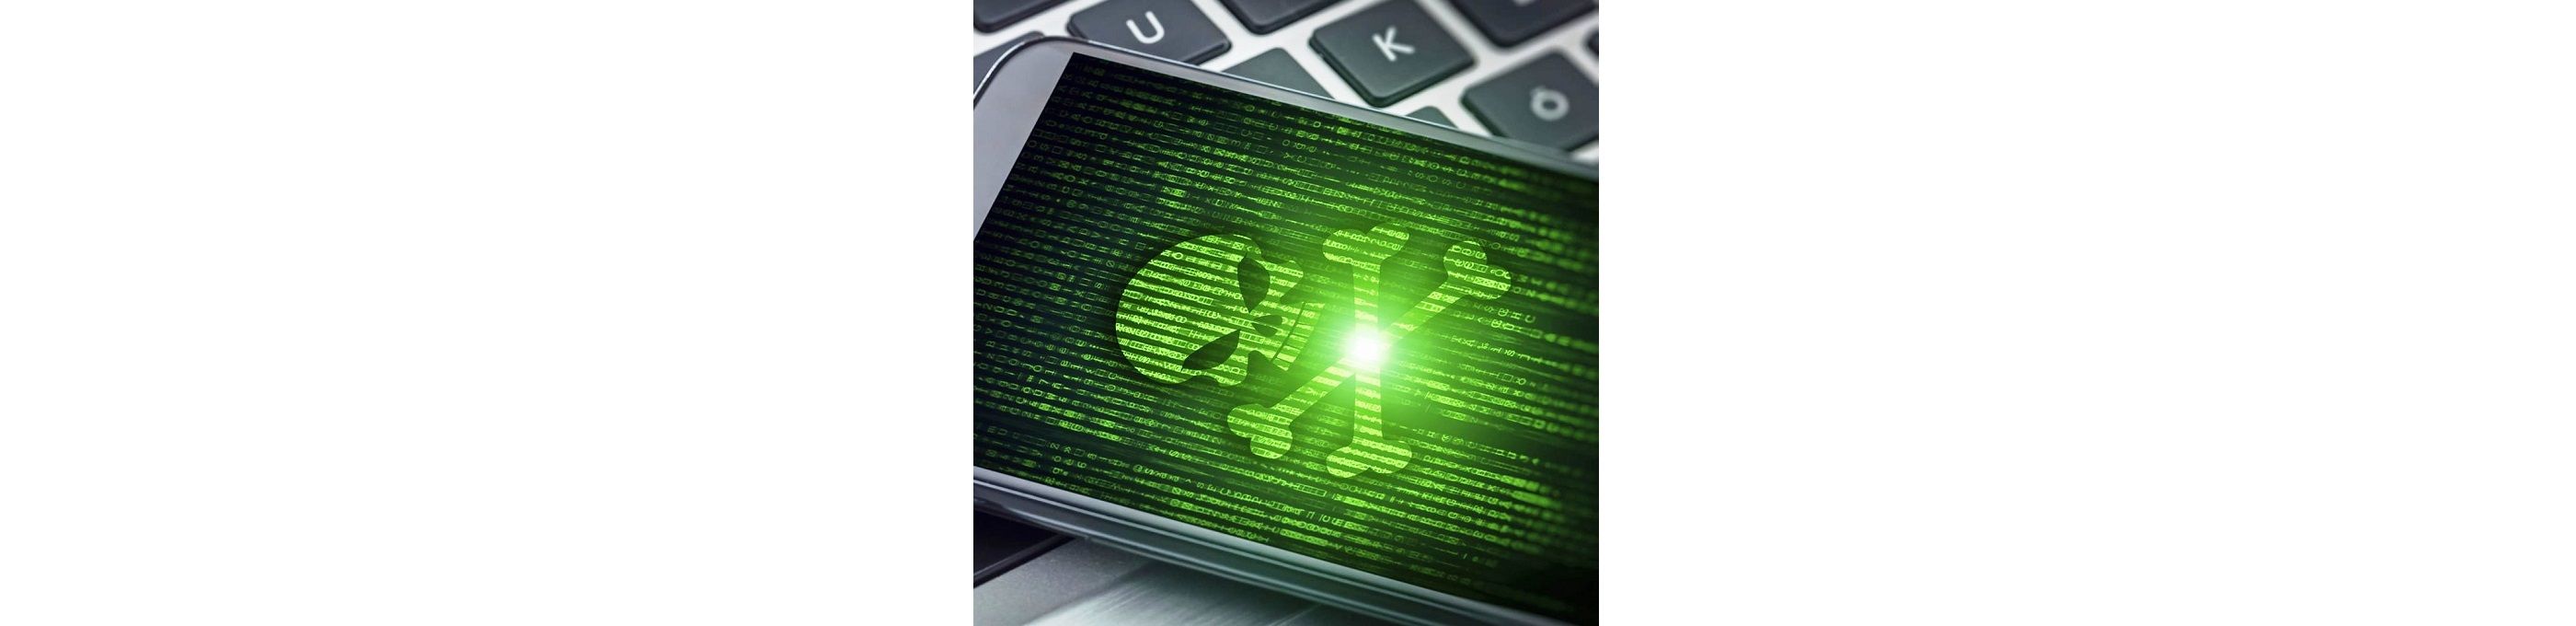 В сети появился новый мобильный Android-троян под названием Gustuff, основными жертвами которого стали владельцы криптовалютных кошельков и клиенты банков.